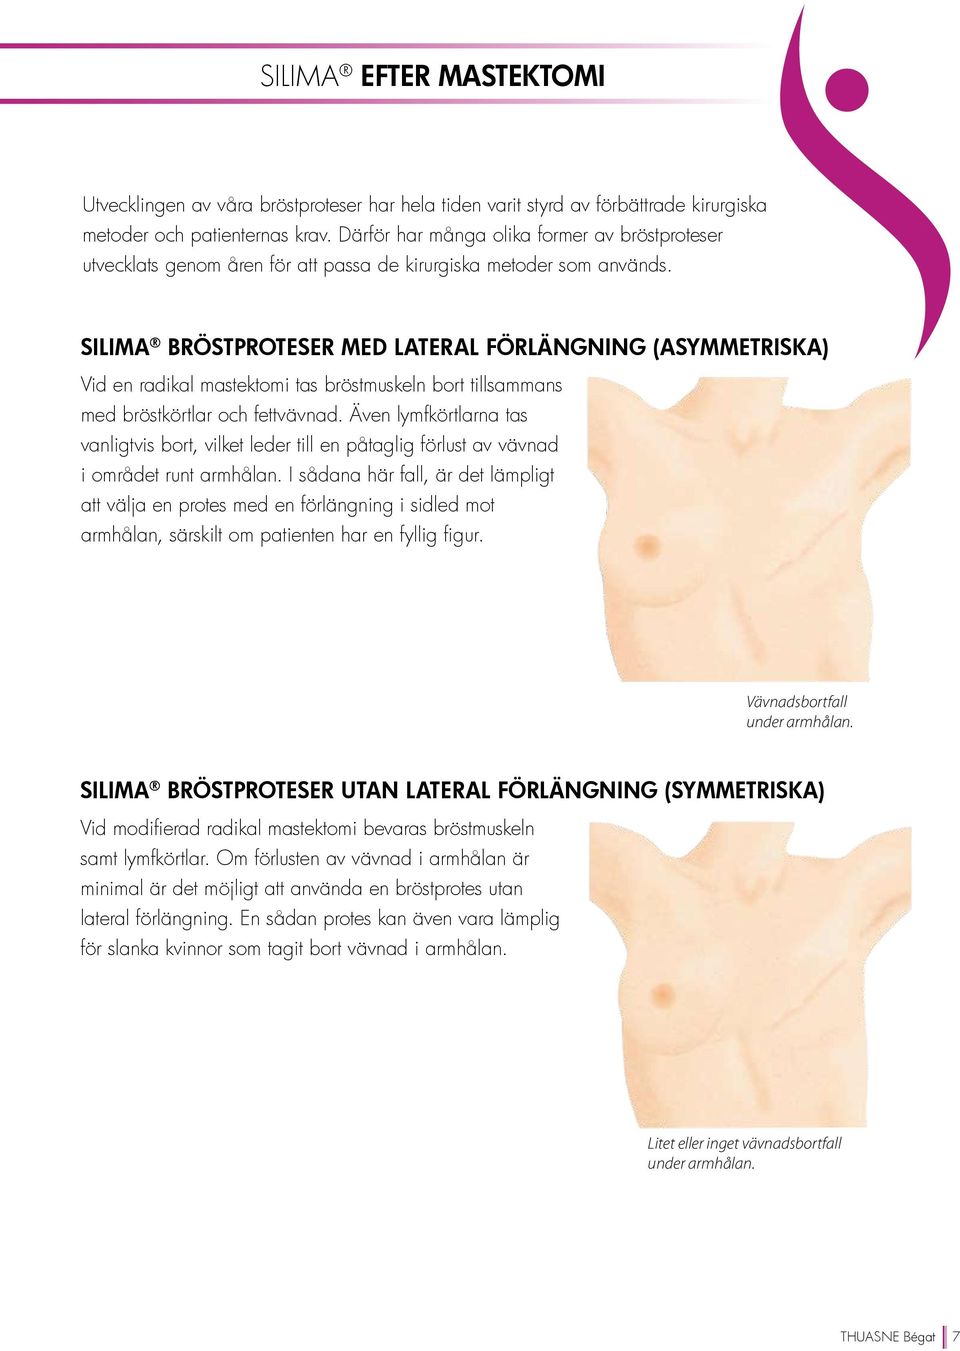 Silima bröstproteser med lateral förlängning (asymmetriska) Vid en radikal mastektomi tas bröstmuskeln bort tillsammans med bröstkörtlar och fettvävnad.